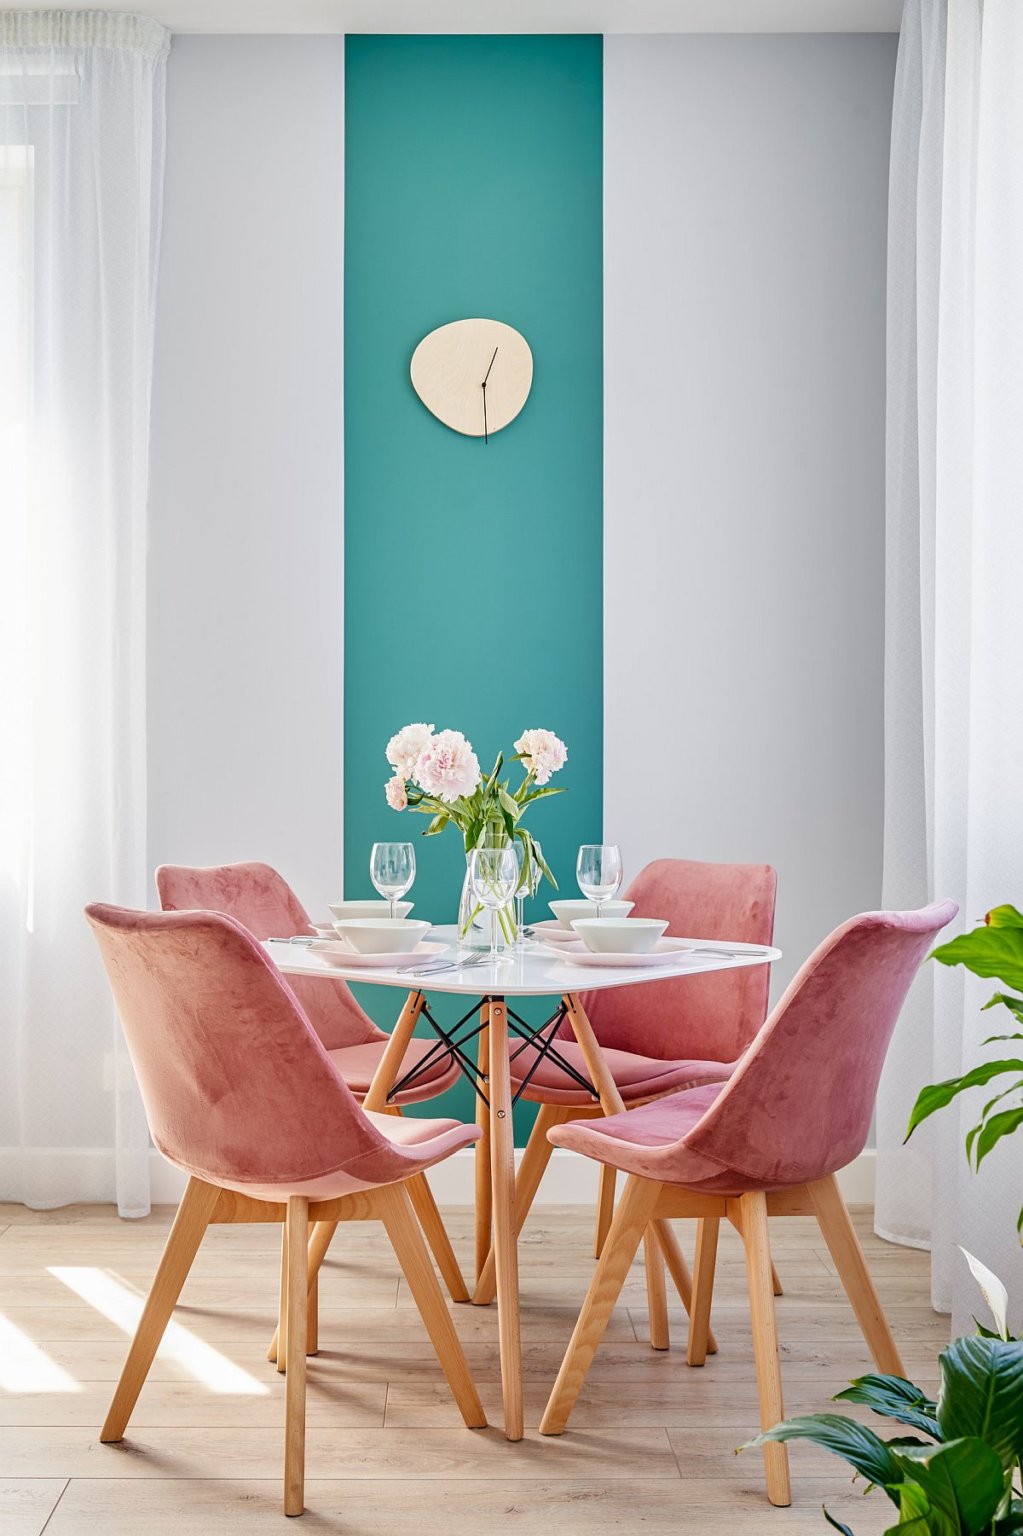 hình ảnh cận cảnh phòng ăn nhỏ với ghế ngồi màu hồng, mảng tường sơn xanh ngọc lam